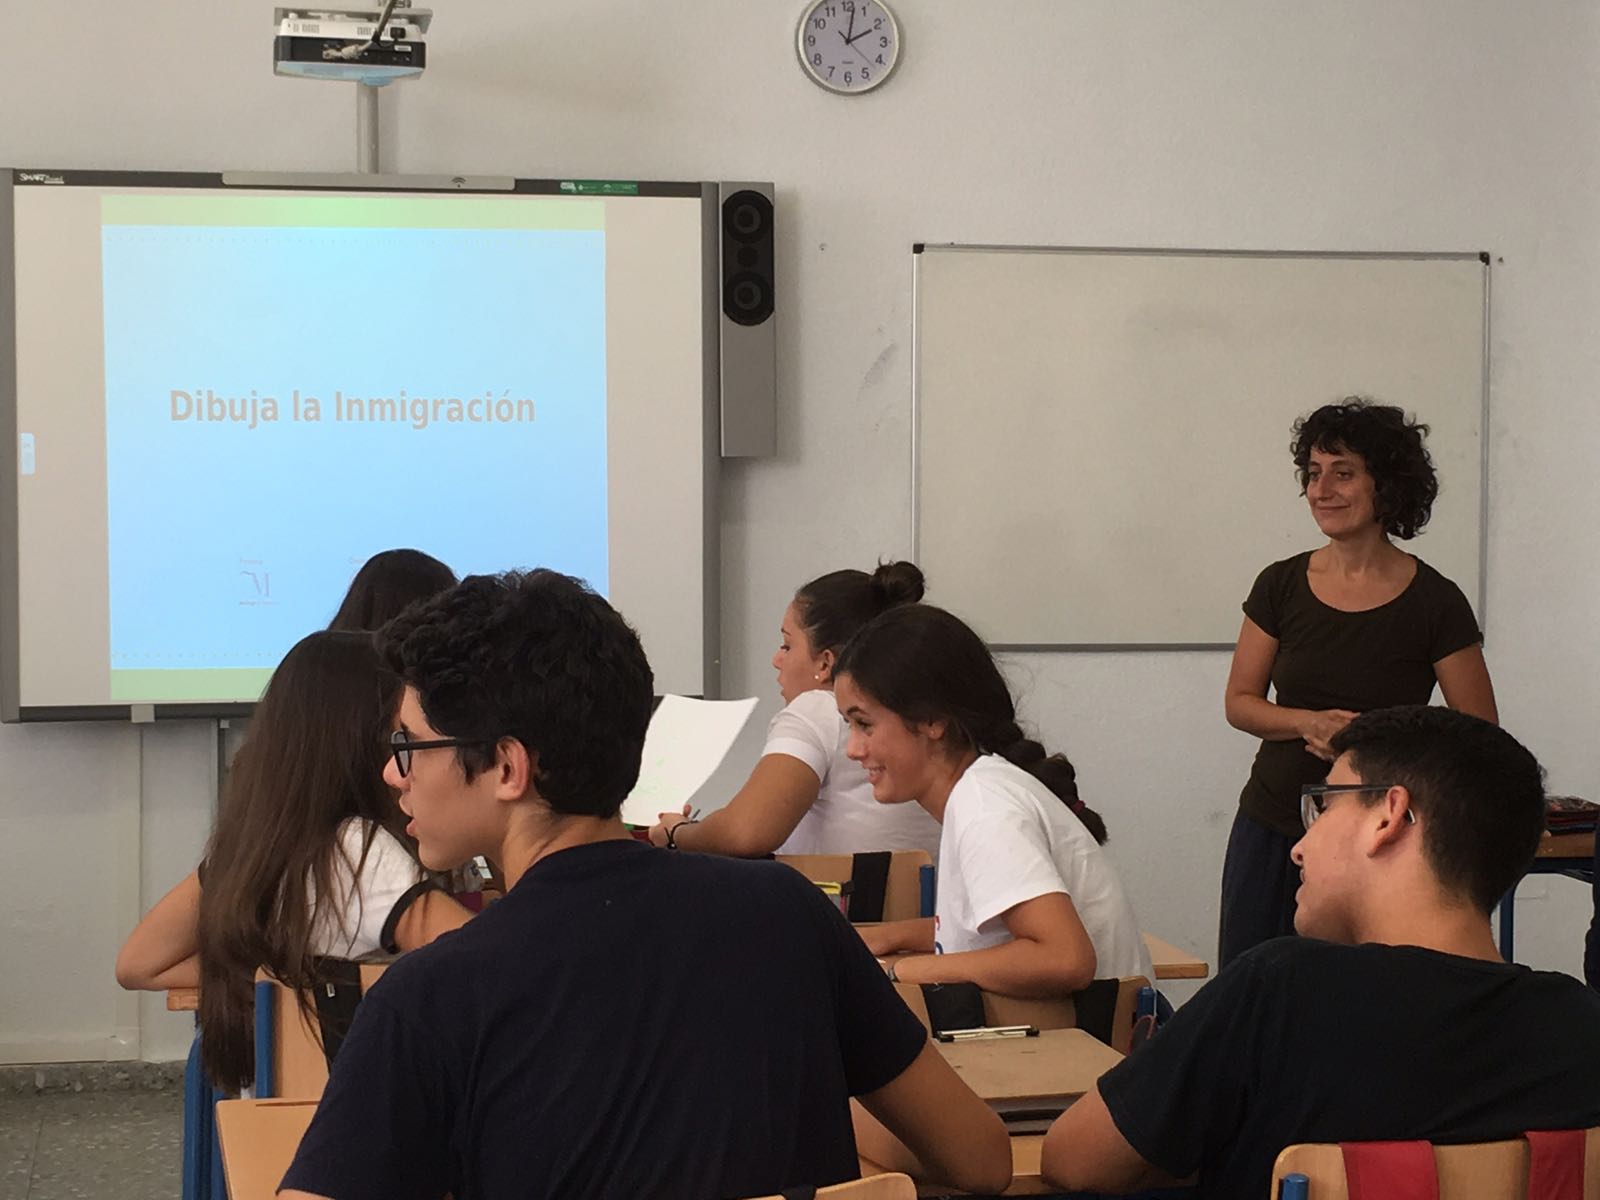 Los rumores sobre inmigración, a debate en aulas de cuatro IES de Málaga